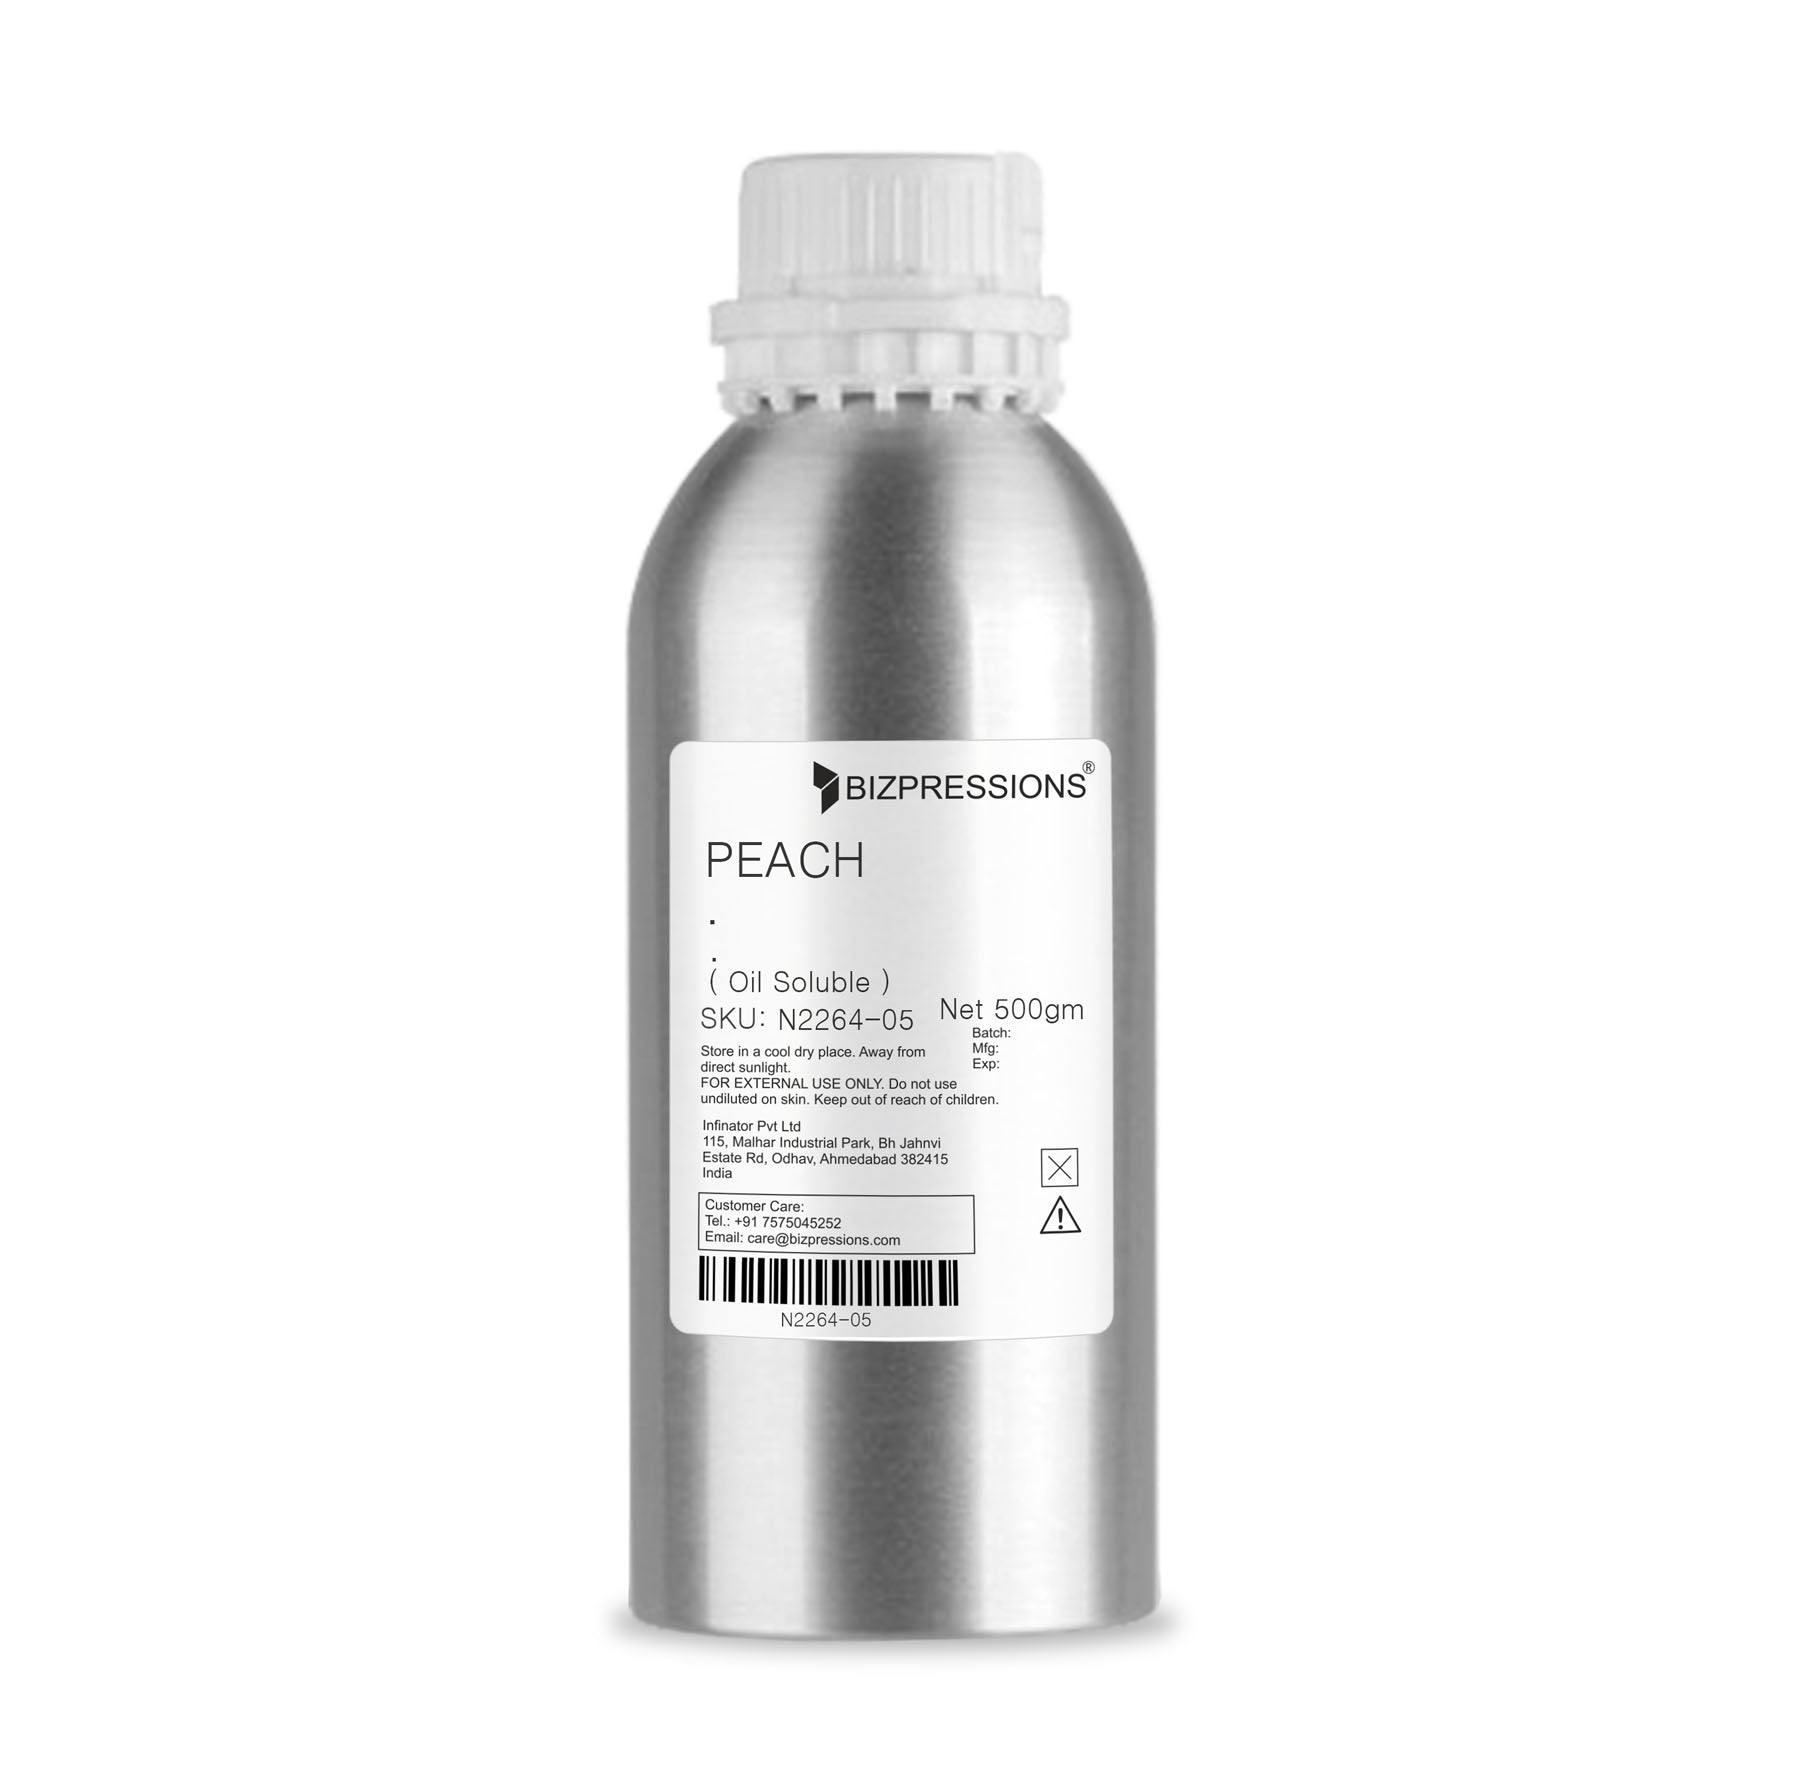 PEACH - Fragrance ( Oil Soluble ) - 500 gm